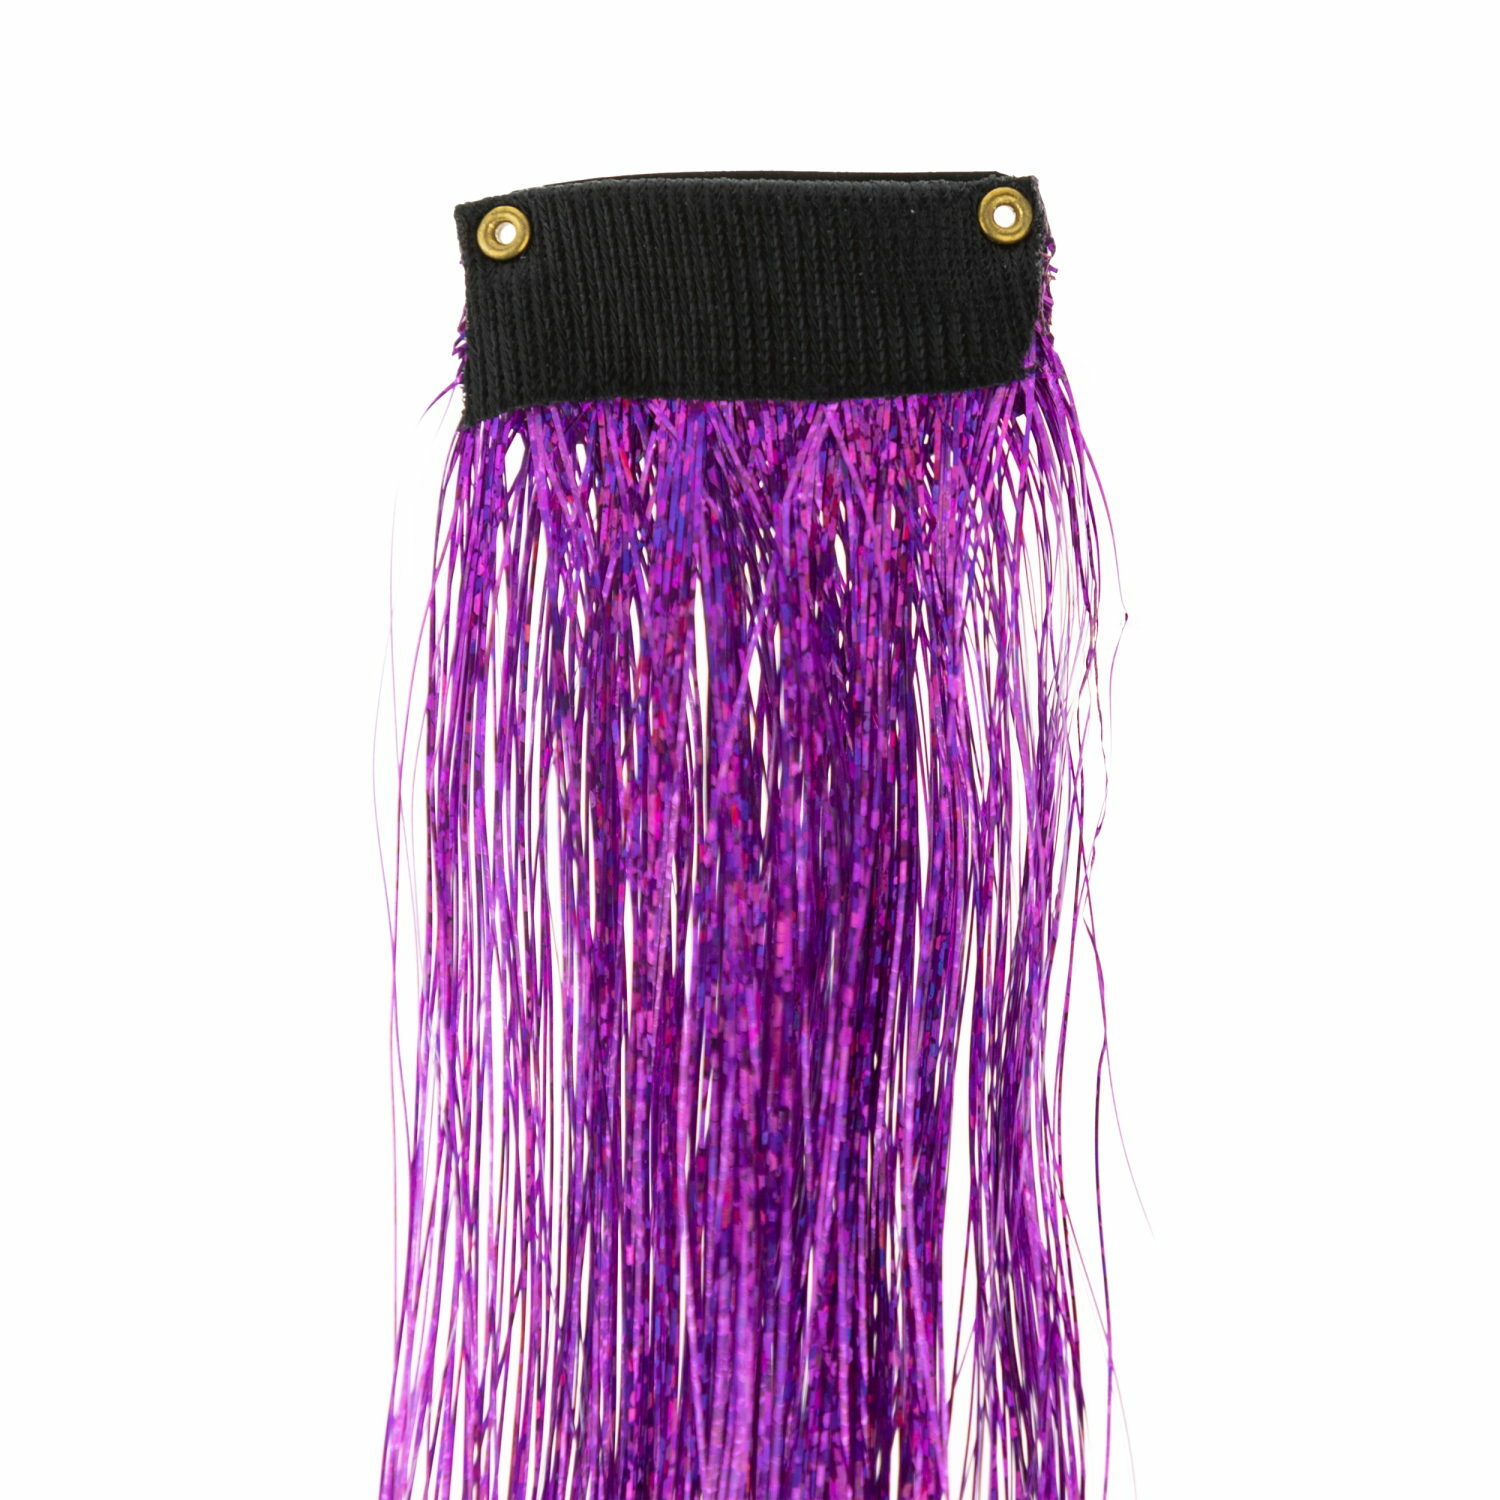 Цветные пряди для волос Lukky Fashion на заколках искусственные блестящие фиолетовые 60 см аксессуары для девочек - фото 6